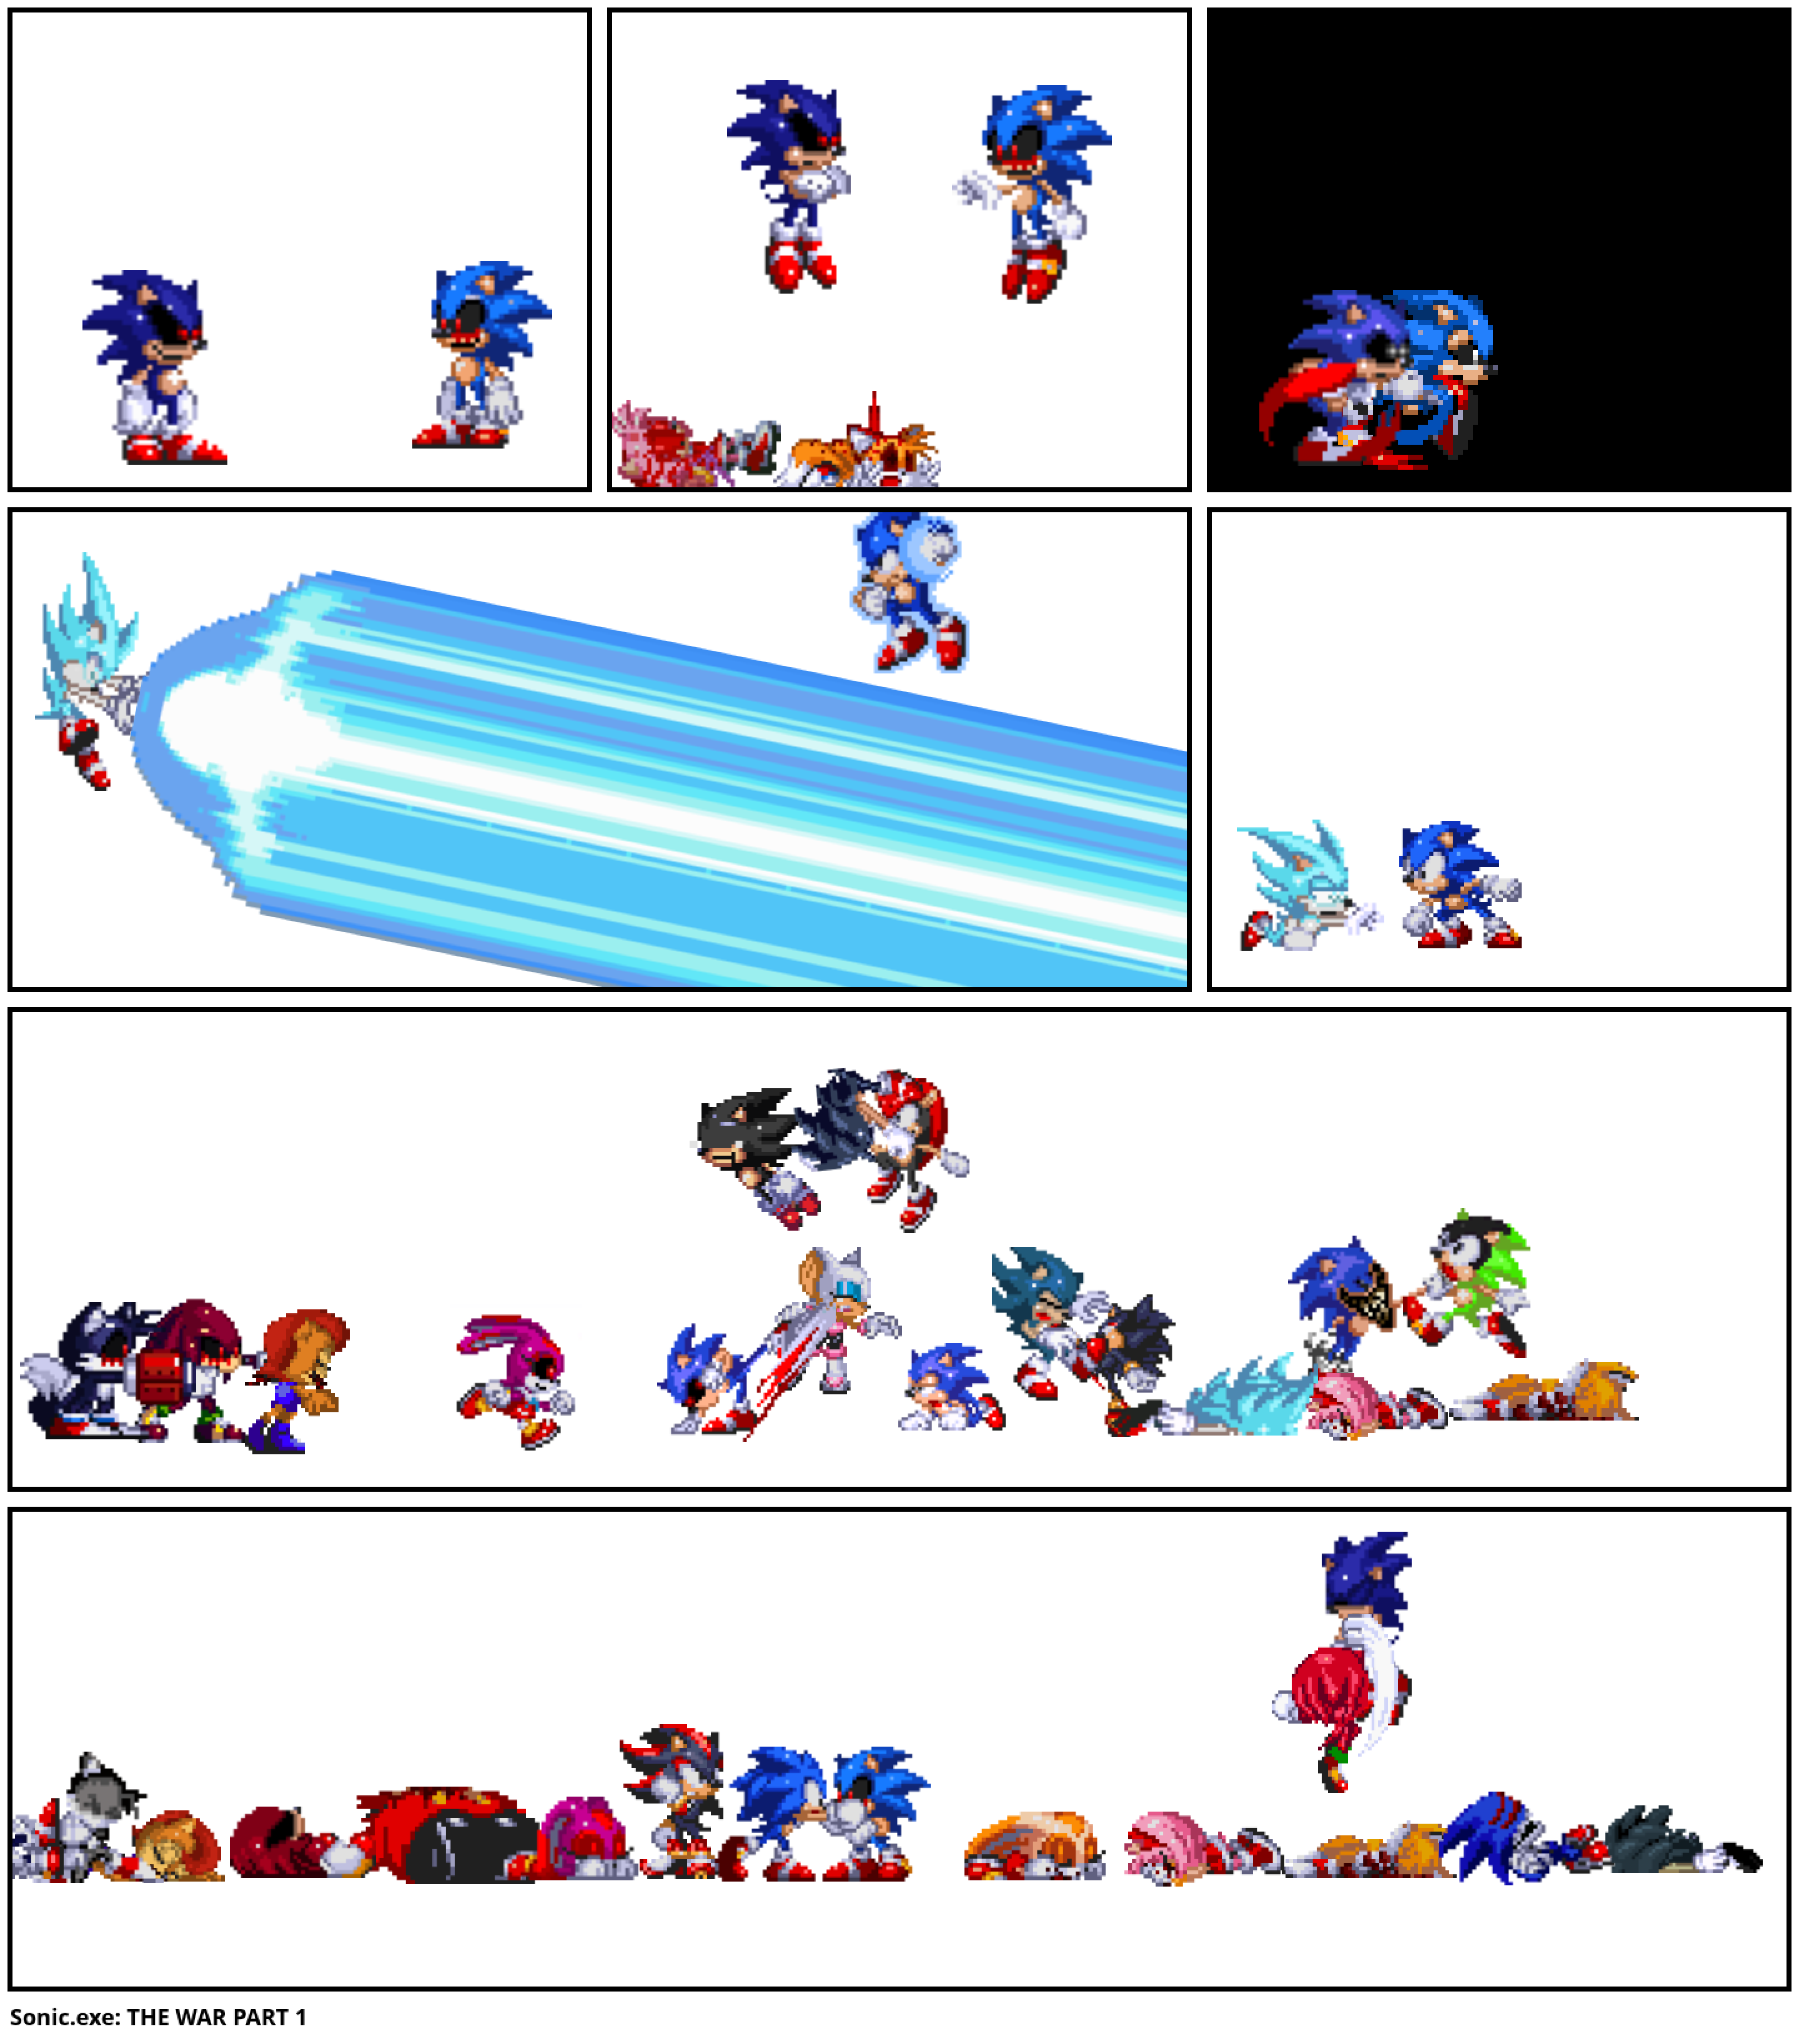 Sonic.exe: THE WAR PART 1